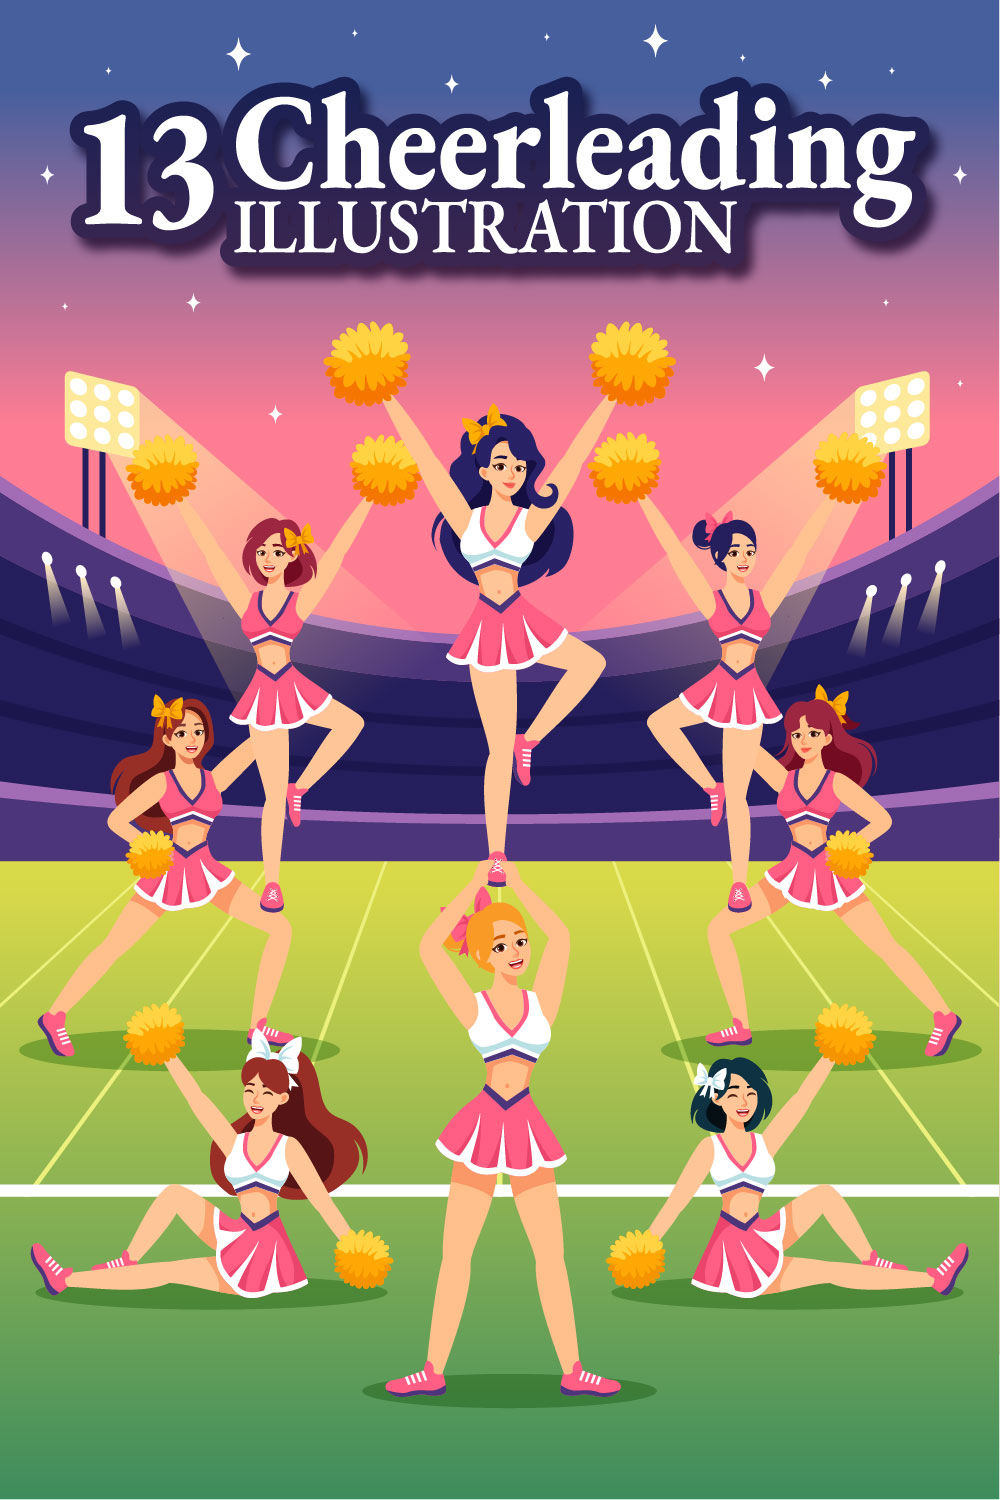 13 Cheerleader Girl Illustration pinterest preview image.